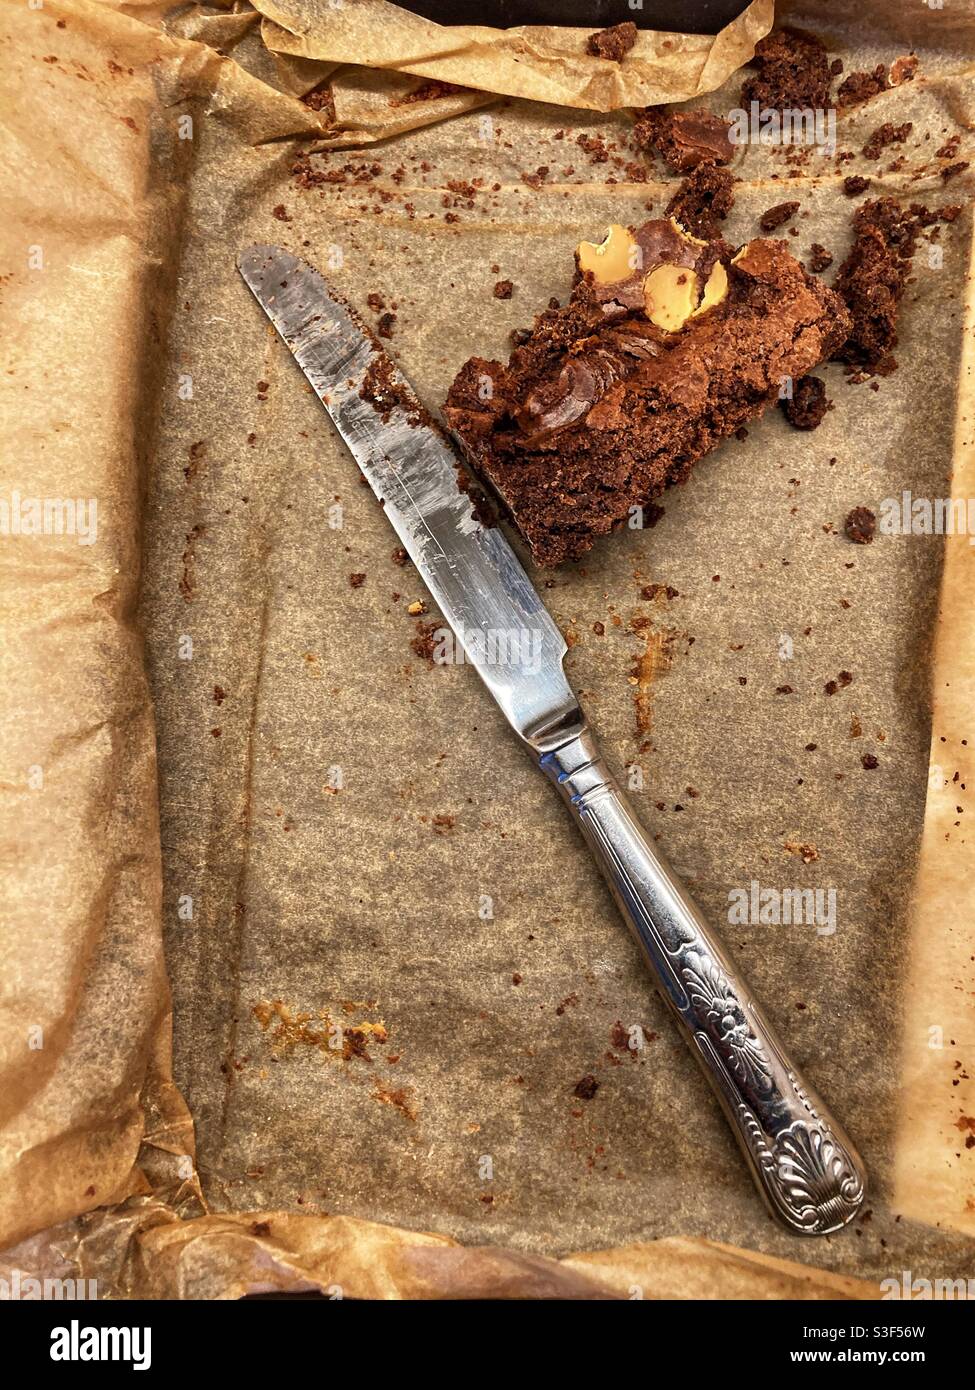 Die Reste eines Schokoladenbrownie mit einem gebrauchten Messer Daneben Stockfoto